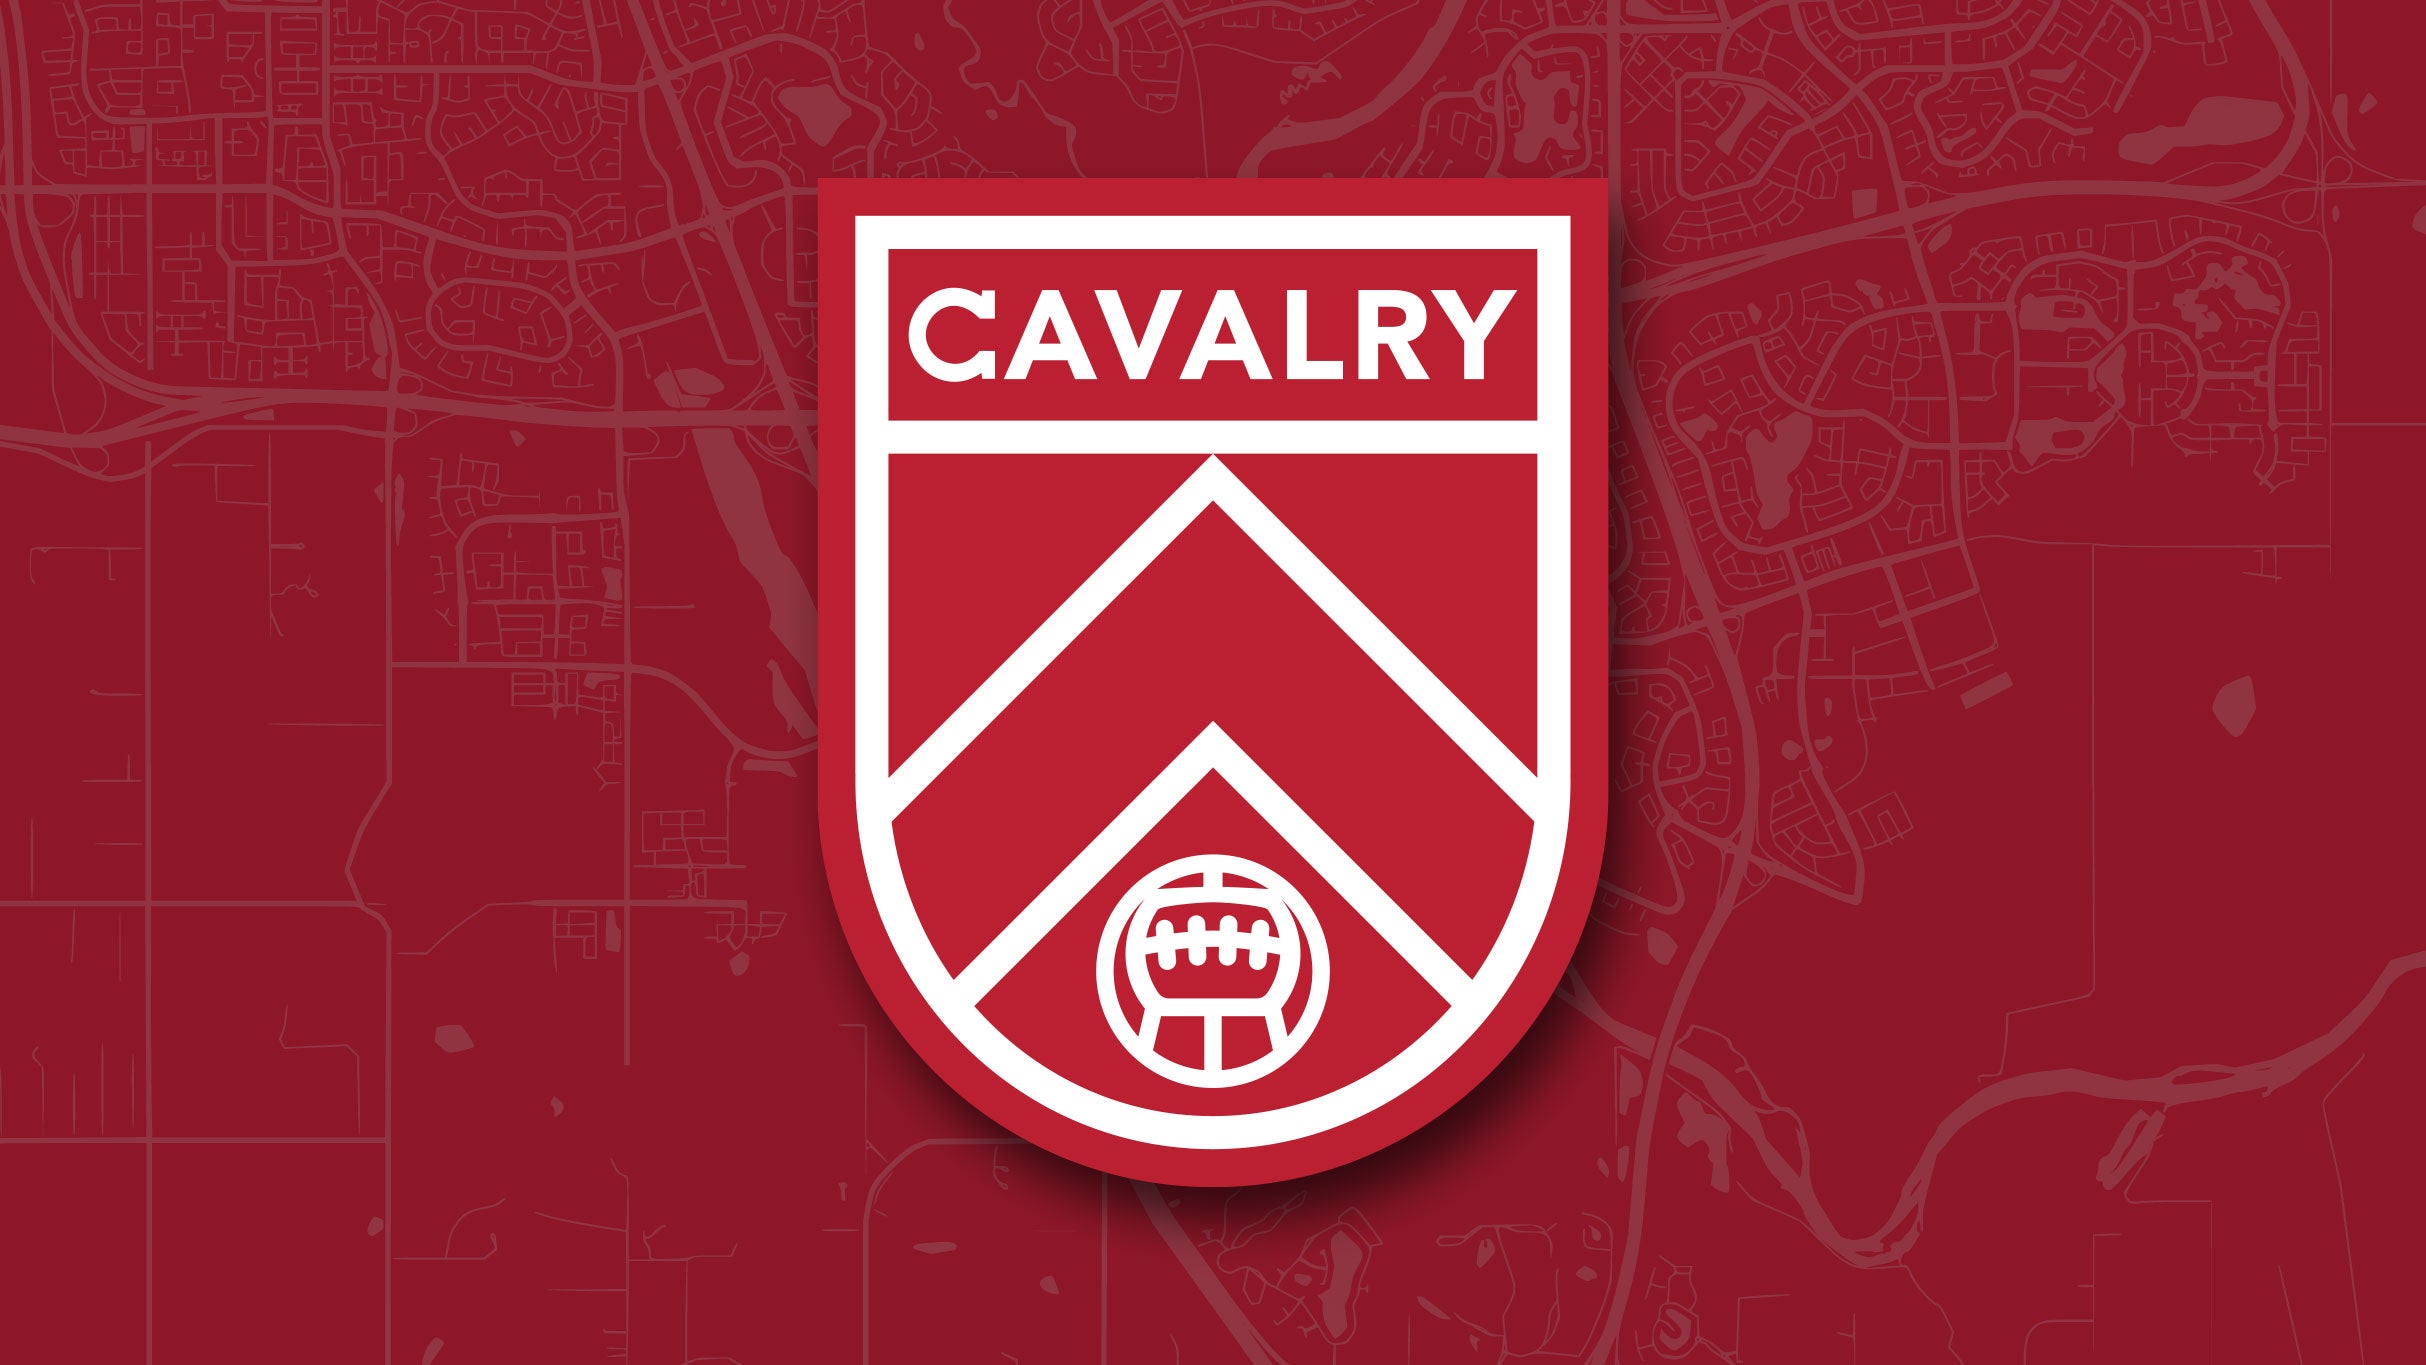 Cavalry FC vs Forge FC presales in Calgary